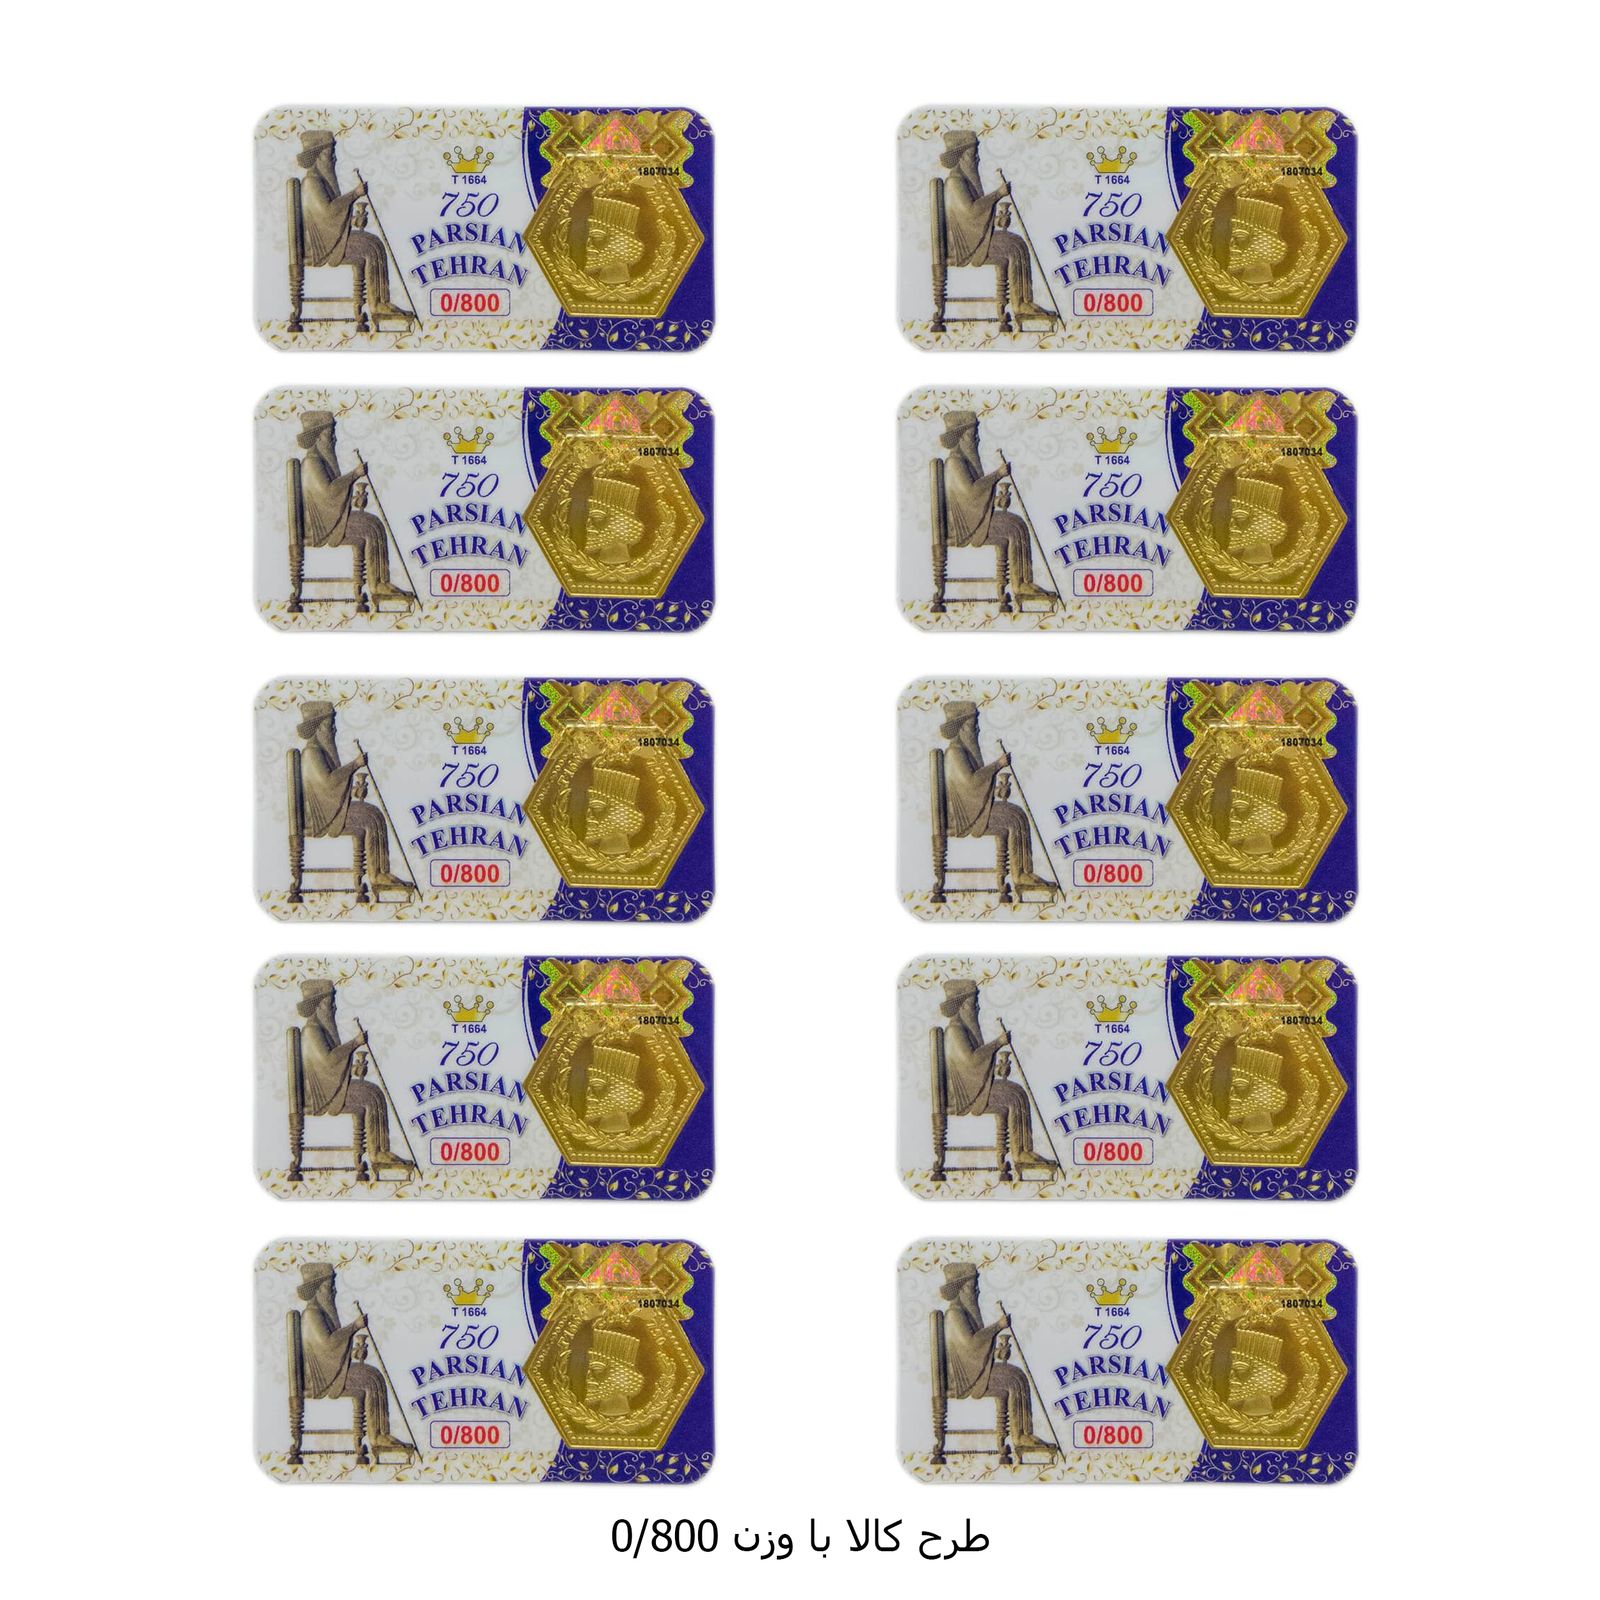 سکه گرمی طلا 18 عیار پارسیان تهران مدل K412 مجموعه 10 عددی -  - 15